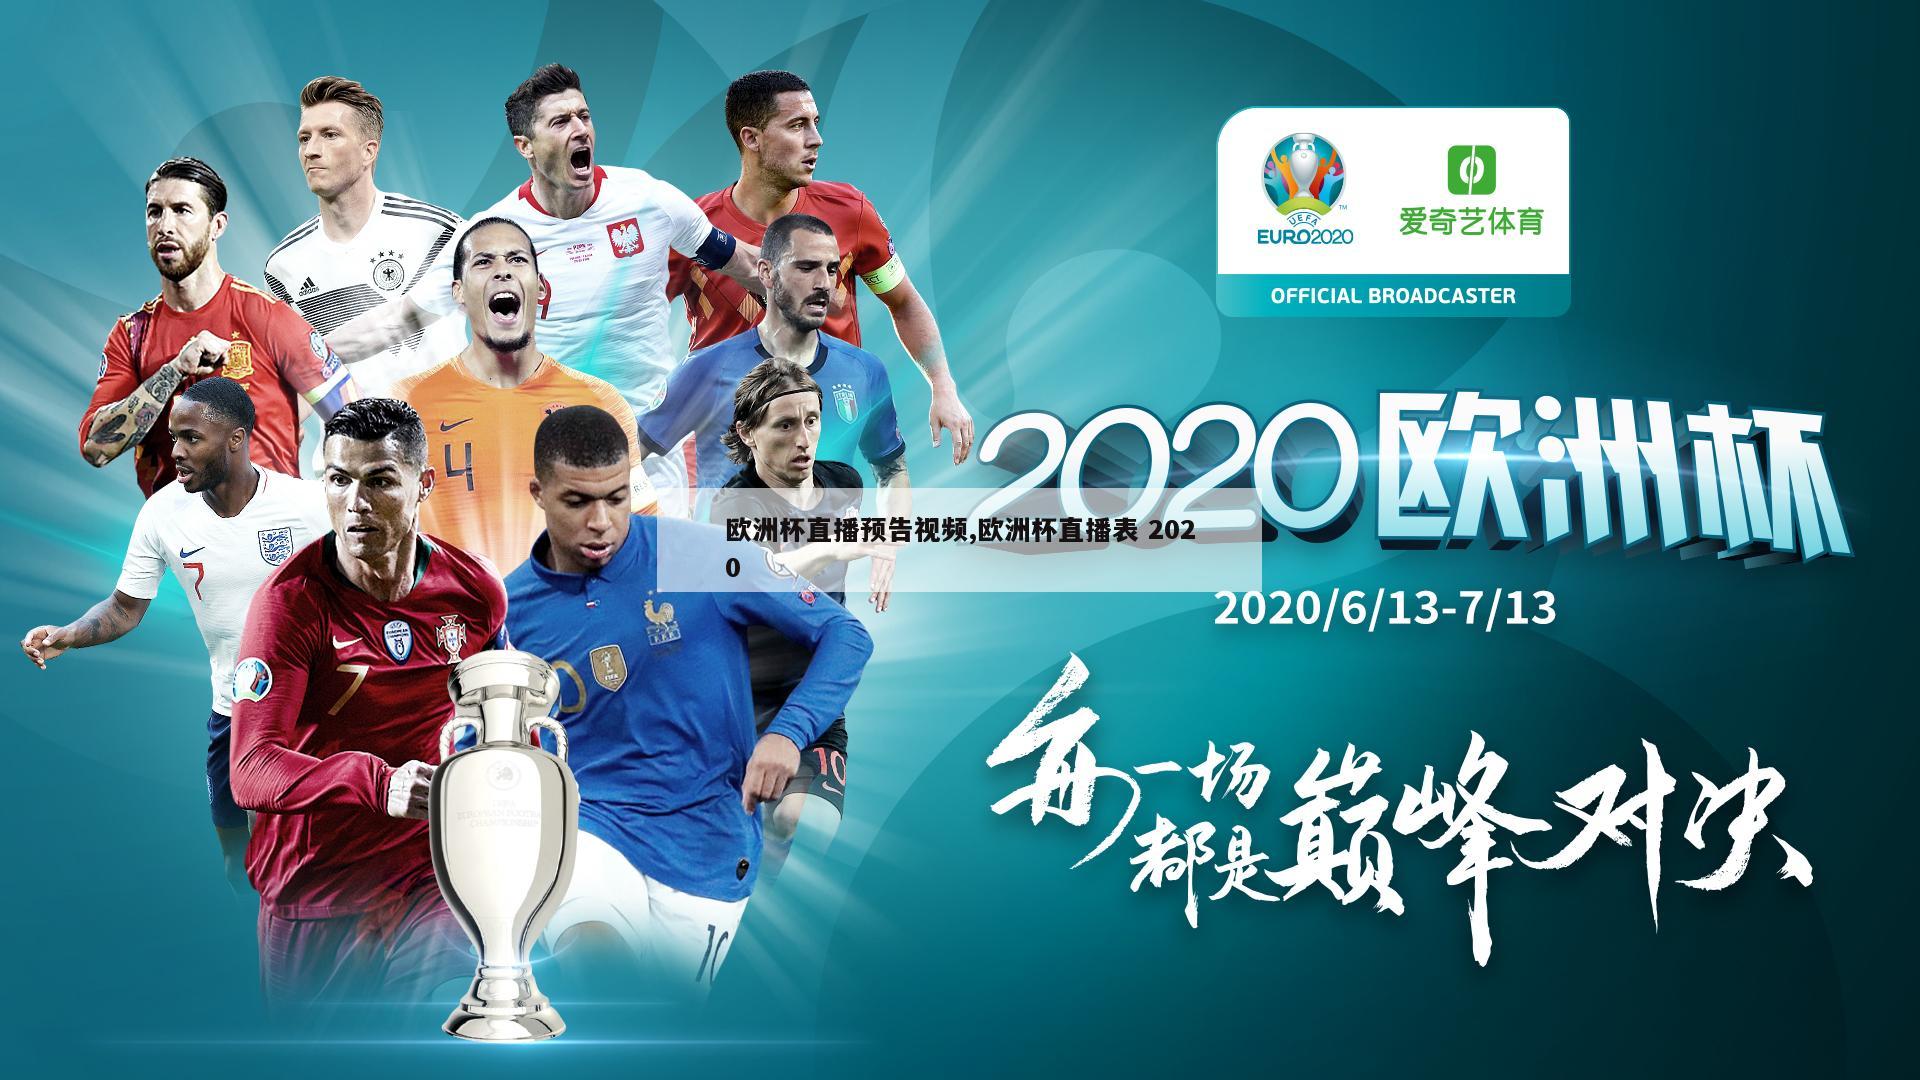 欧洲杯直播预告视频,欧洲杯直播表 2020